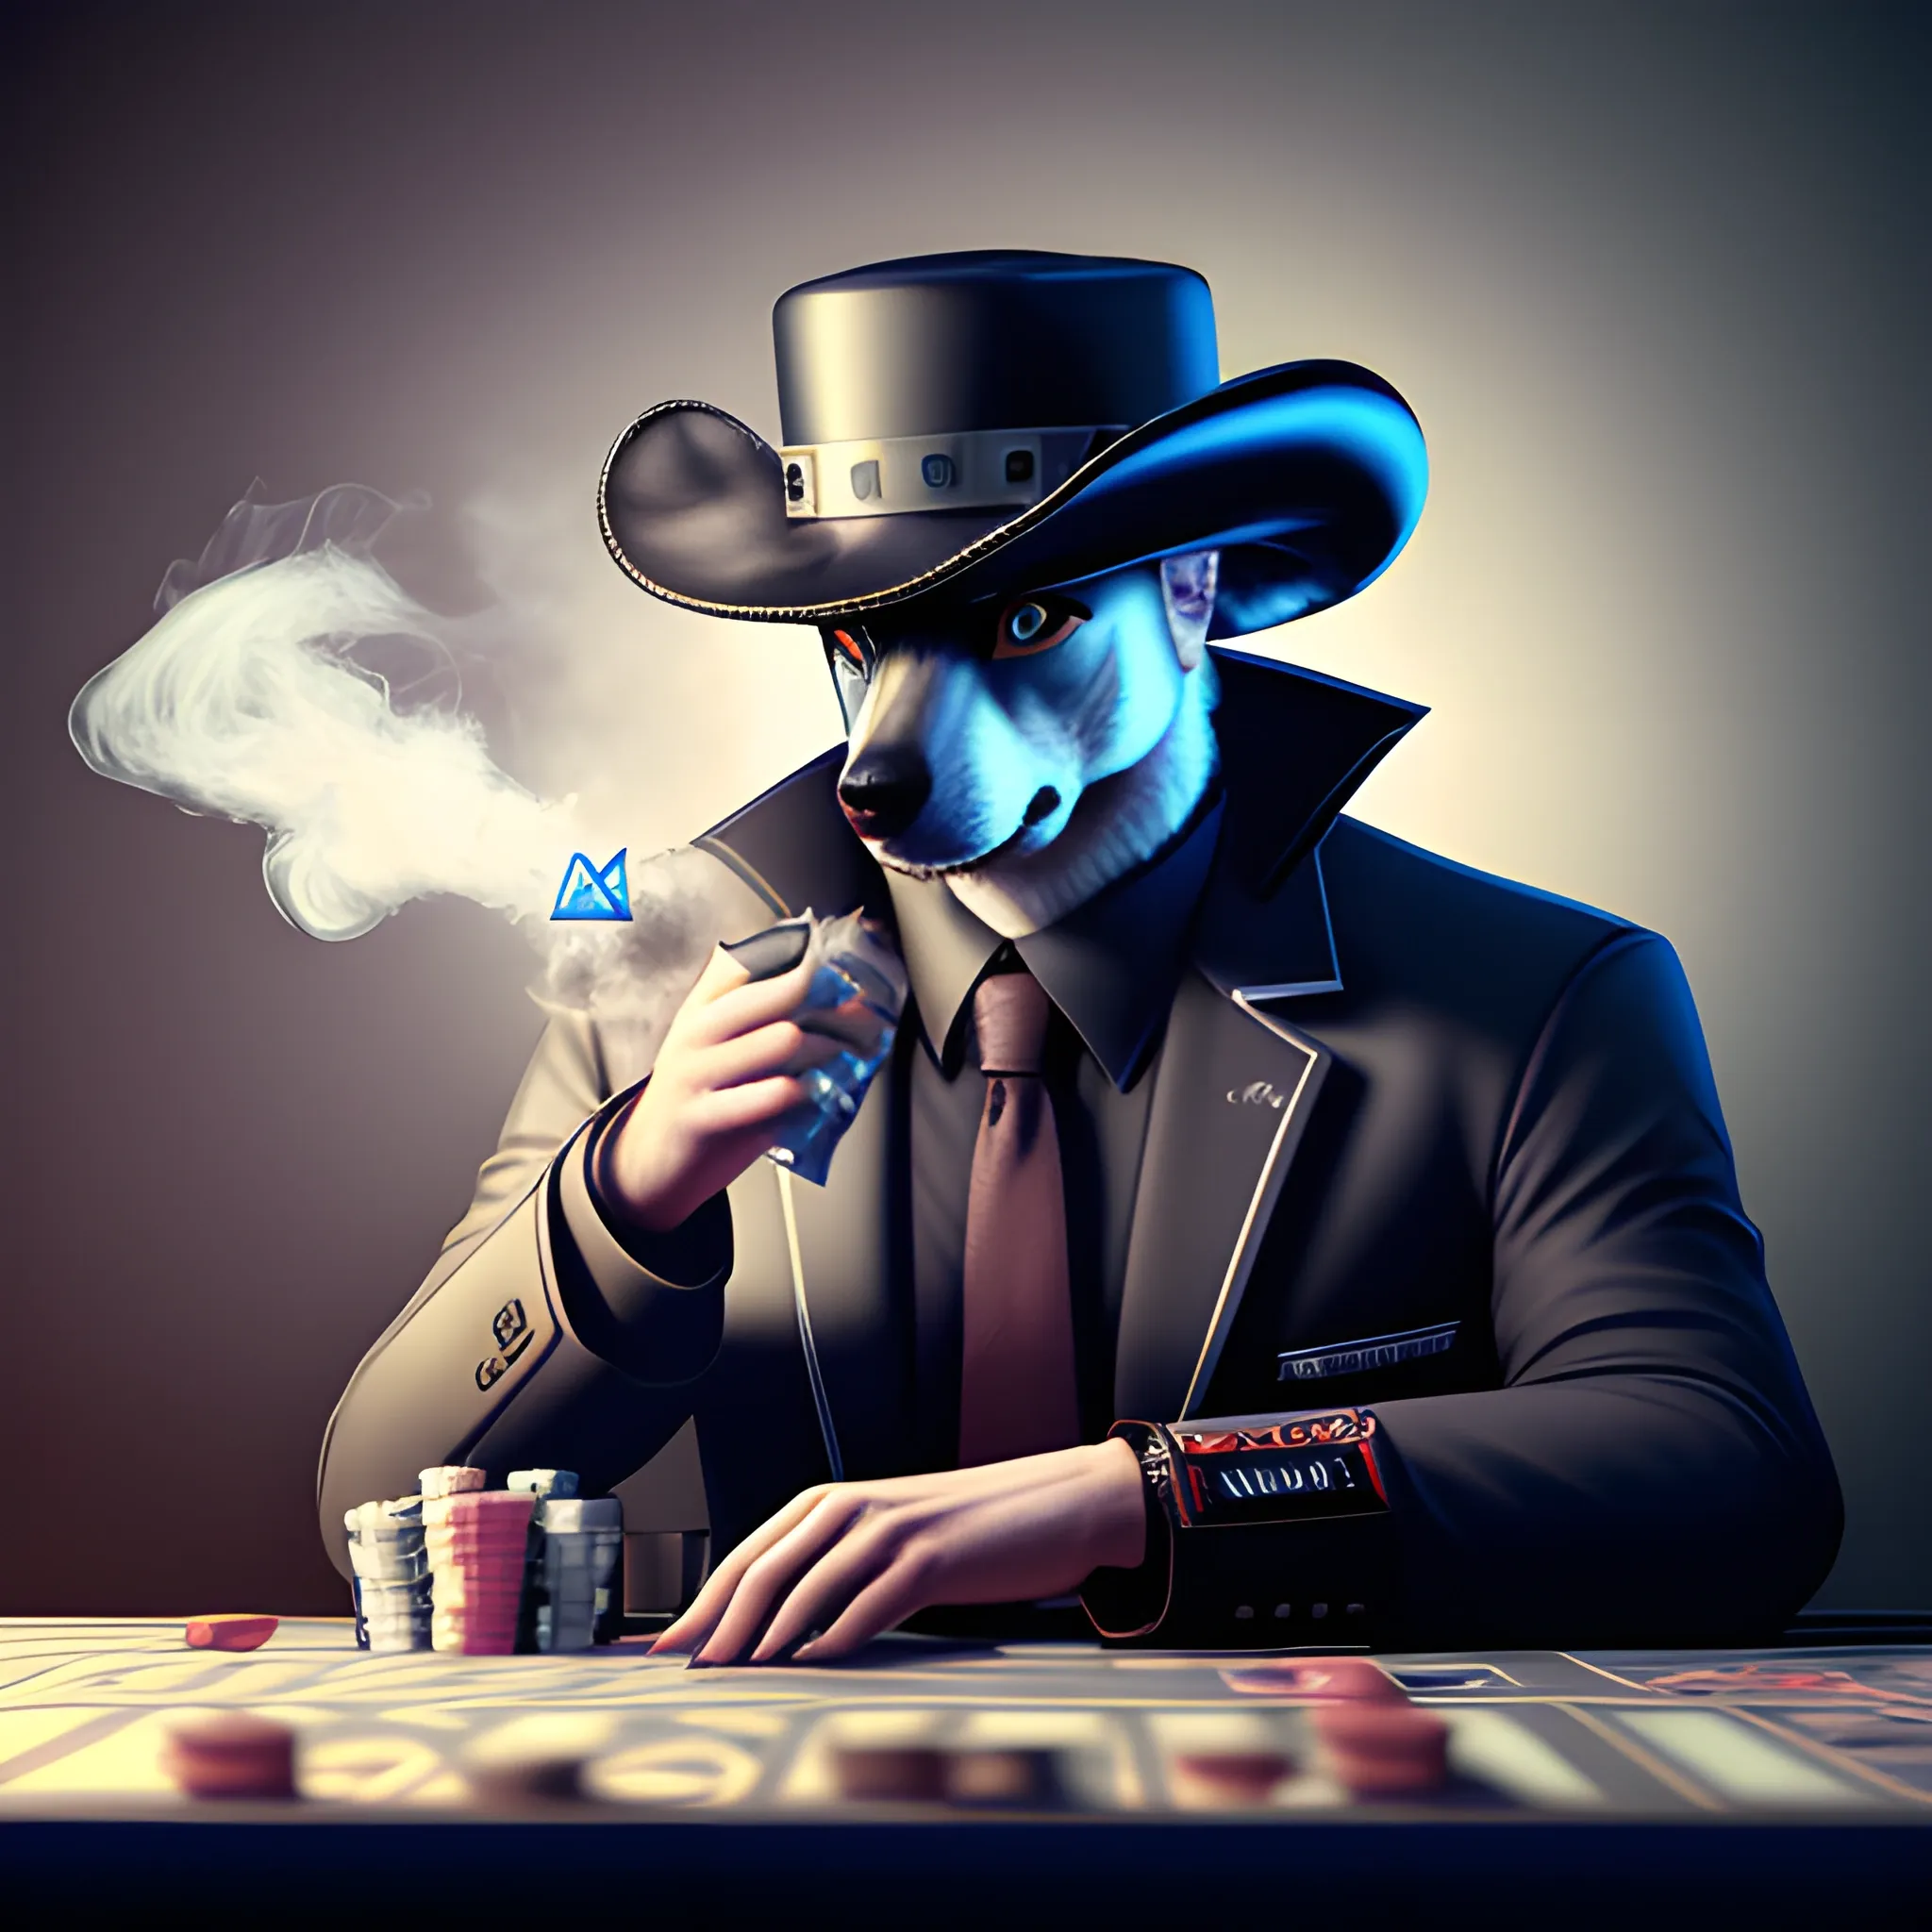 Husky siberiano, fumando puro, jugando al poker con sombrero de mafioso, realista, 4k, gracioso, cyberpunk